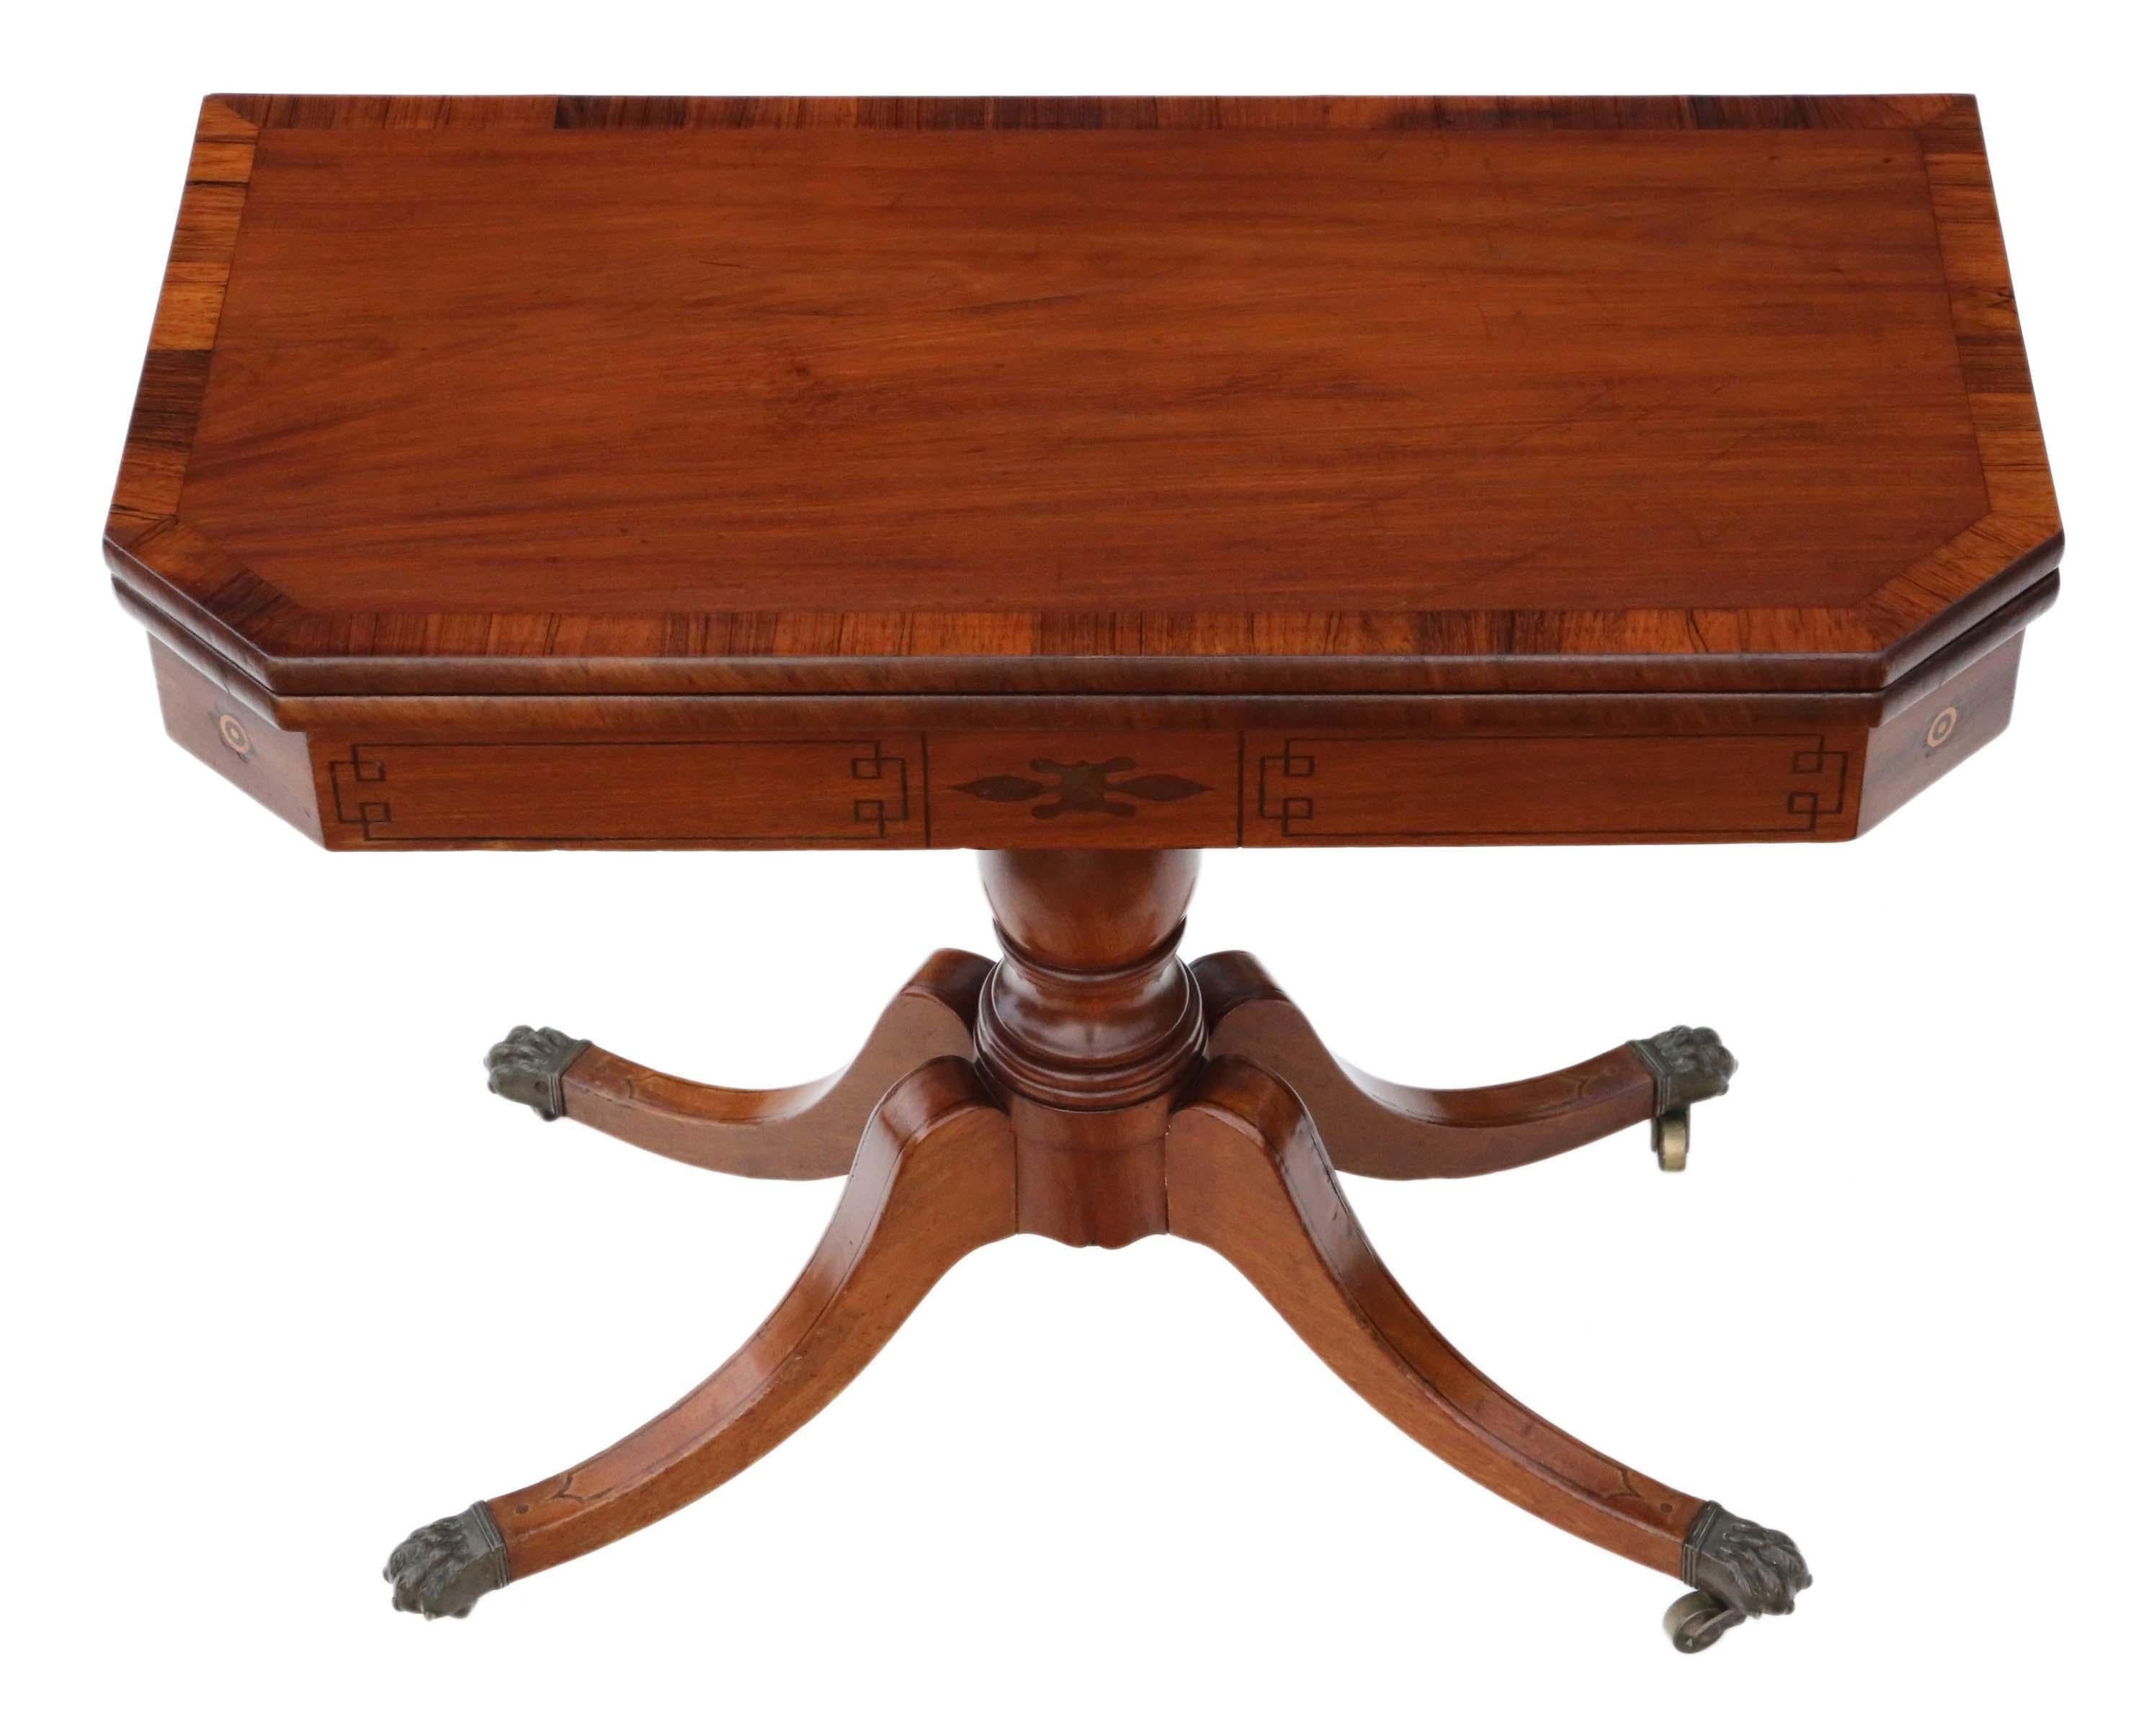 Voici une ancienne table à thé pliante de style géorgien, fabriquée vers 1810 en acajou et ornée de bandes transversales en bois de rose. Cette pièce polyvalente peut également servir de table à cartes ou de console enchanteresse.

Cette table